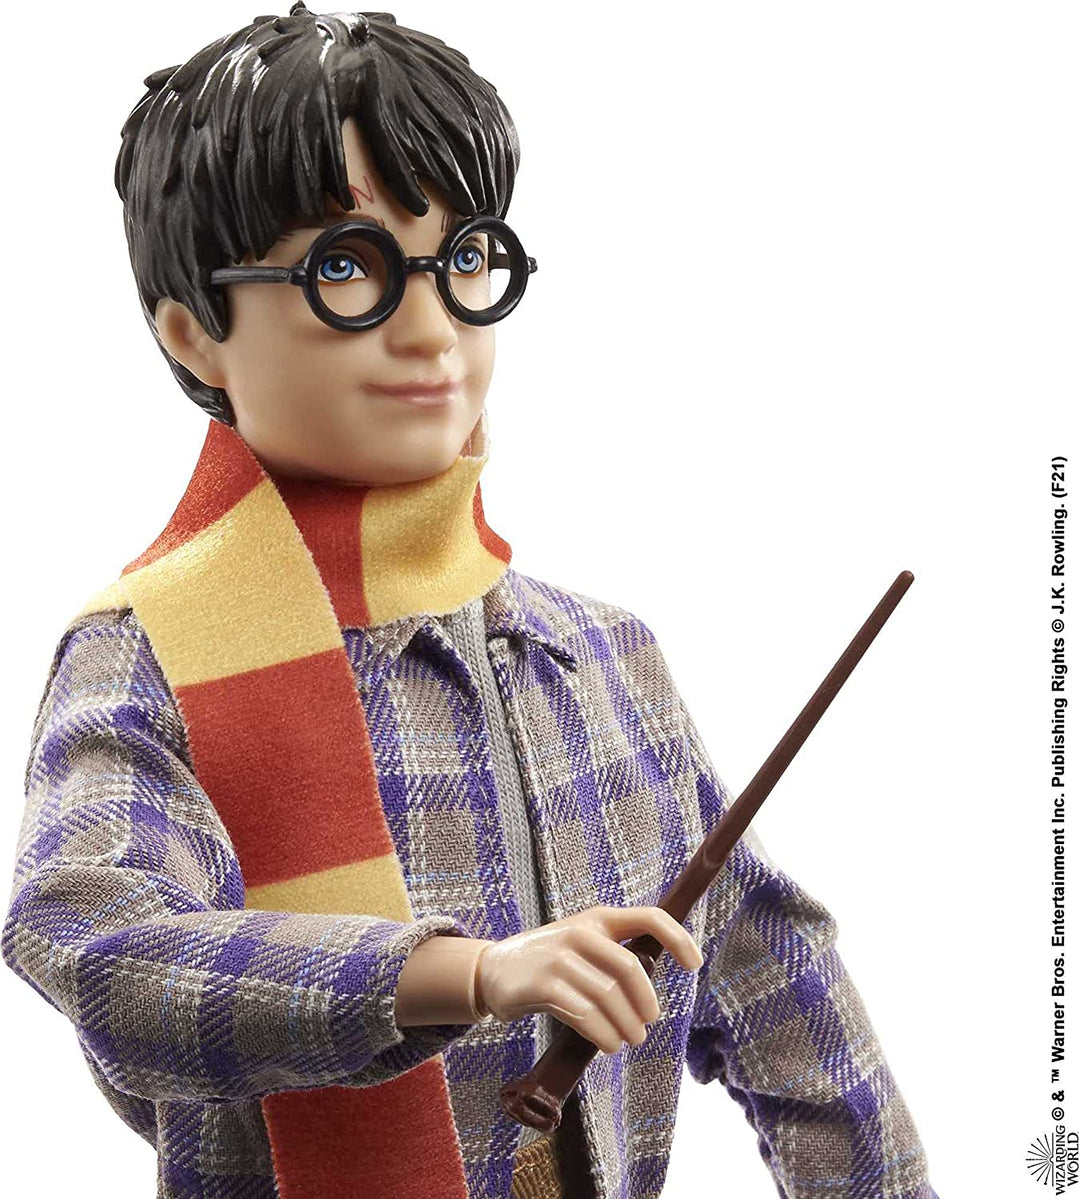 Harry Potter - Muñeca coleccionable con plataforma de 9 3/4 (10 pulgadas), posable, con moda de viaje, con Hedwig, equipaje y accesorios